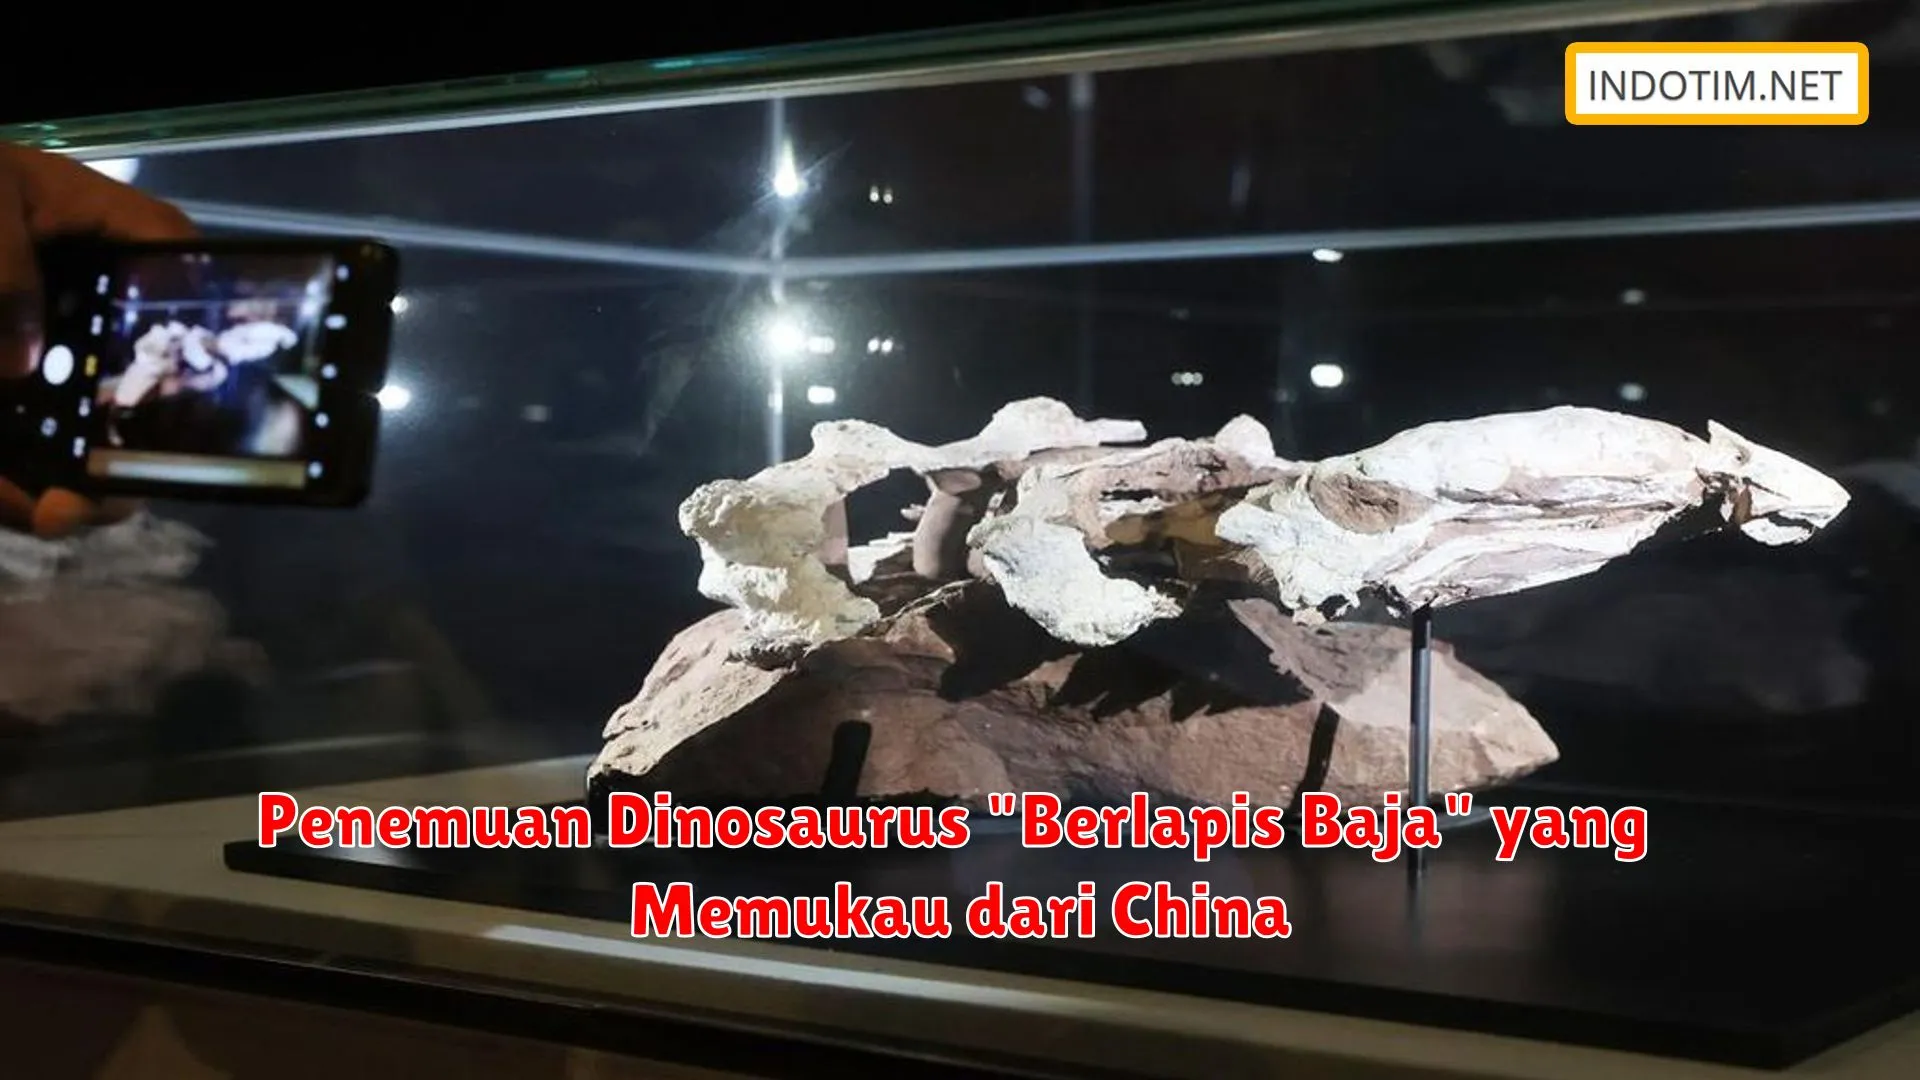 Penemuan Dinosaurus "Berlapis Baja" yang Memukau dari China